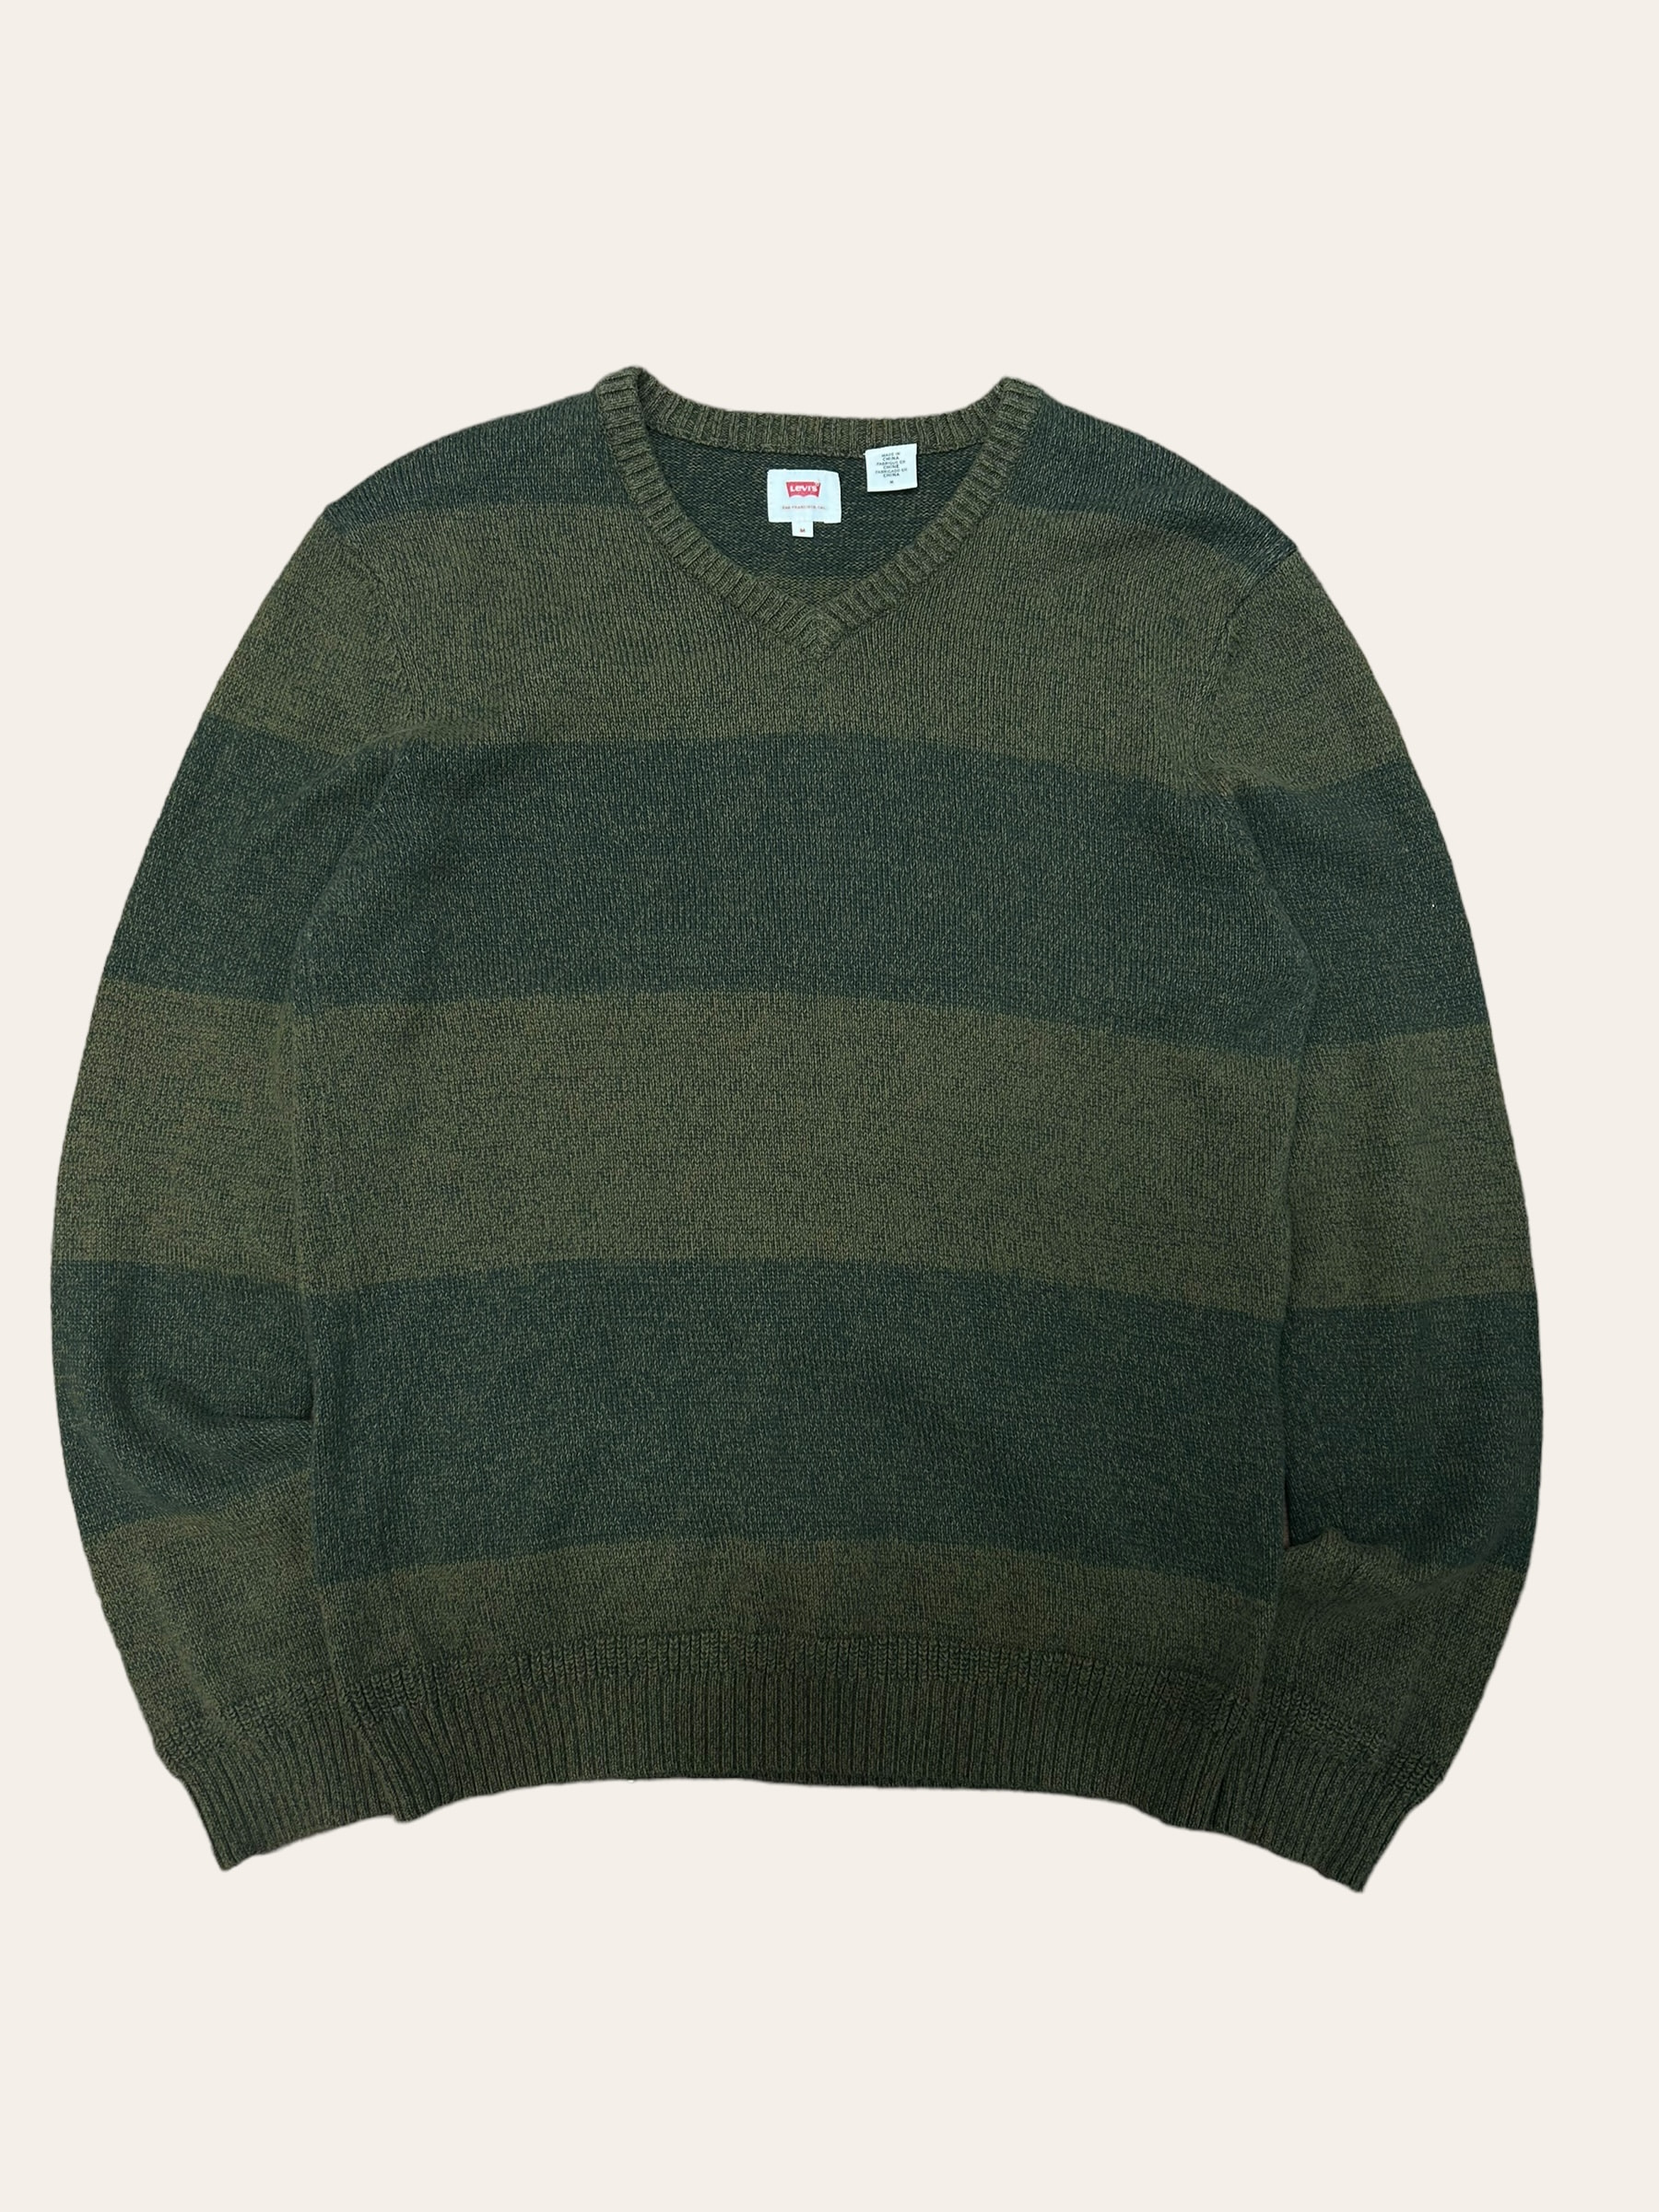 Levis khaki color stripe cotton v-neck sweater M